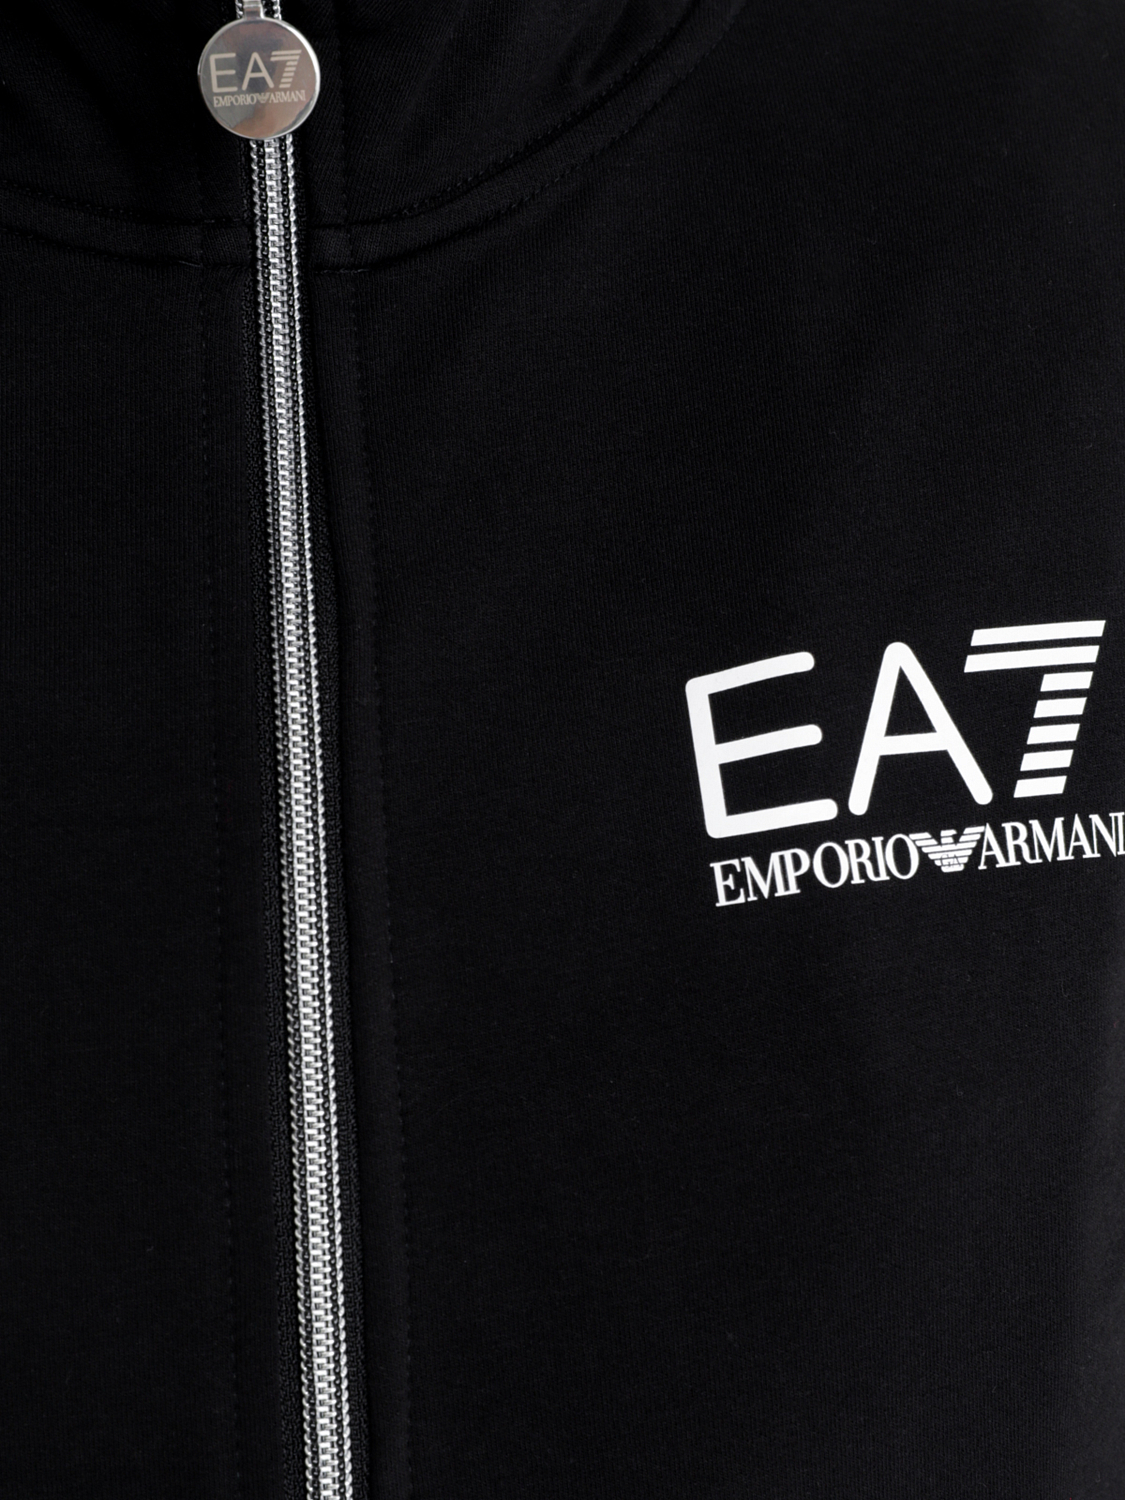 Джемпер для активного отдыха EA7 Emporio Armani 3LTM11-TJCQZ Sweatshirt Black